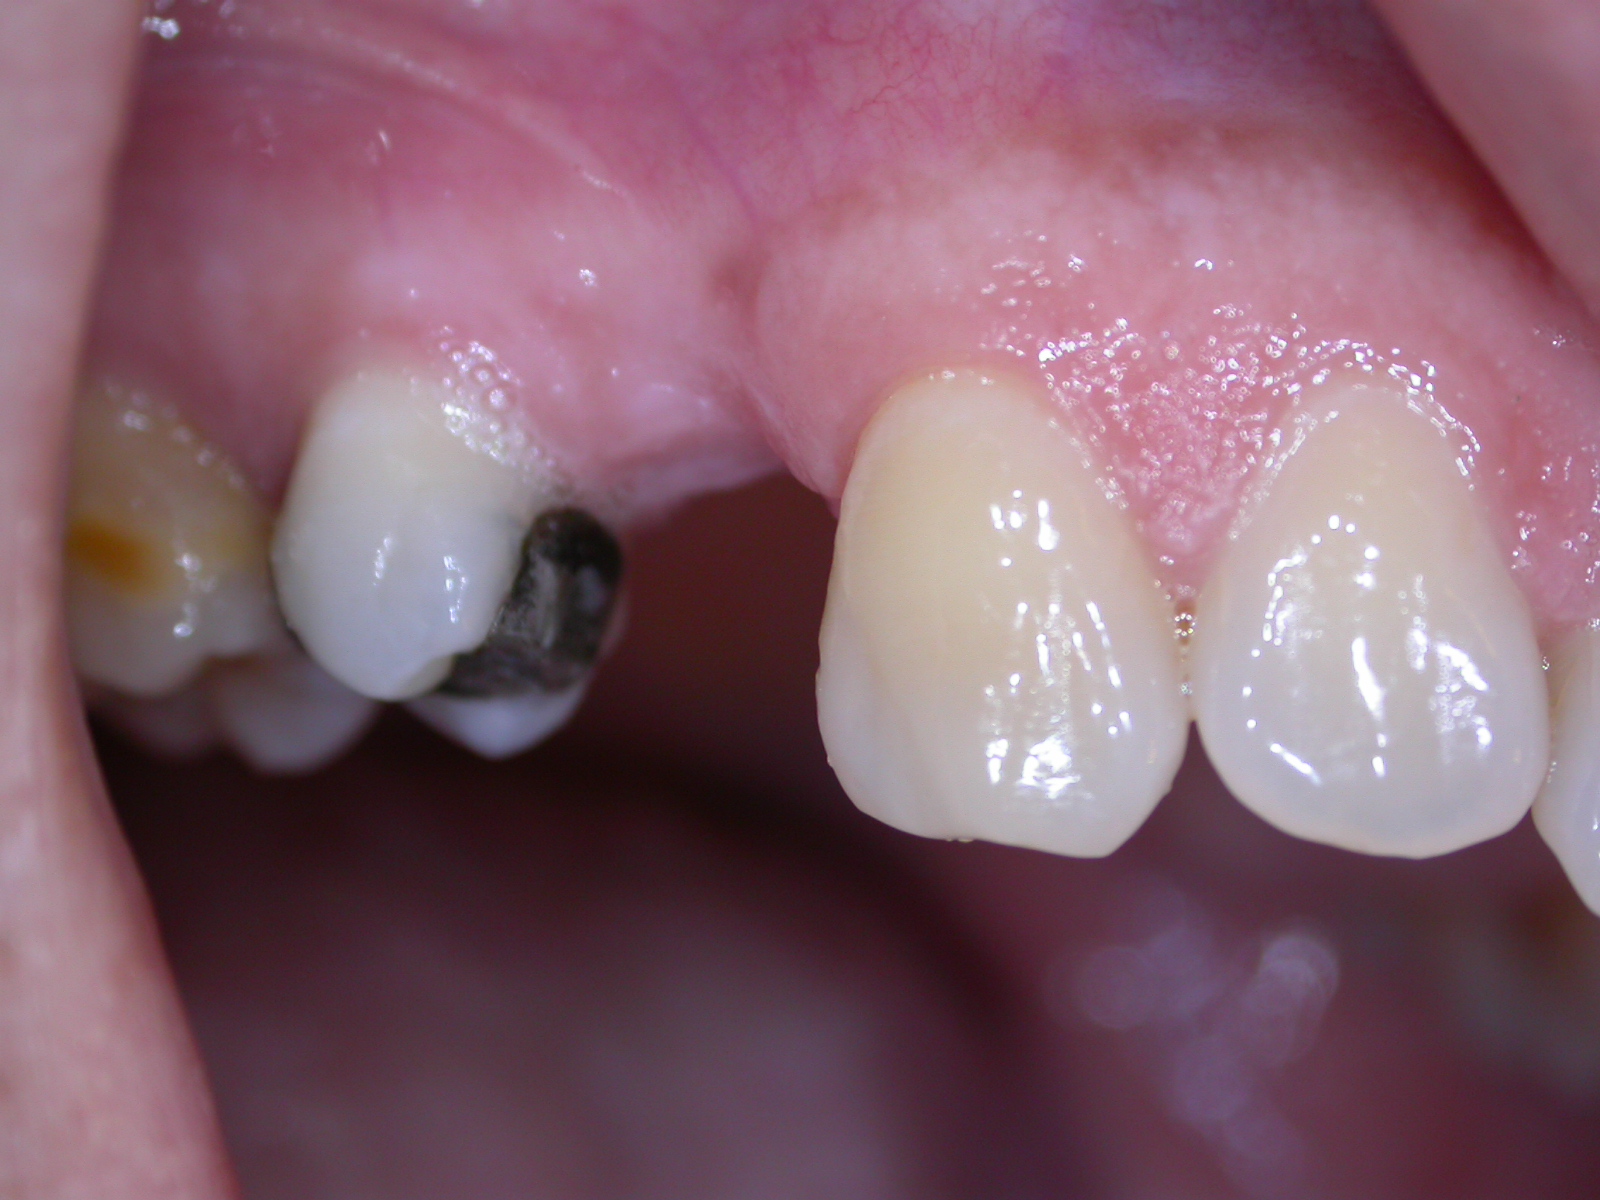 Sostituzione dente 1.5 con implantologia